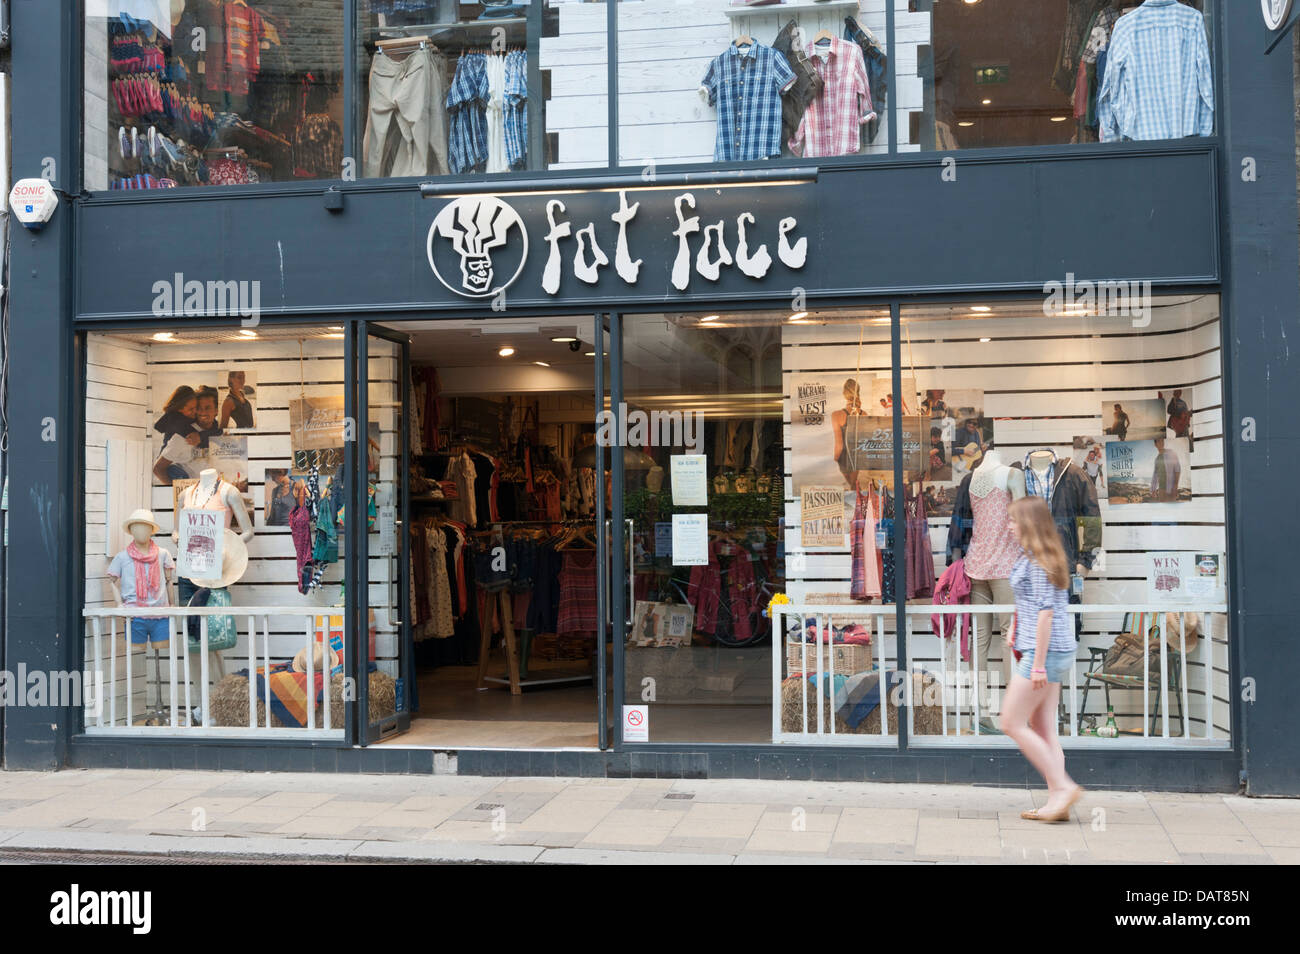 Faccia grassa negozio di abbigliamento Cambridge Regno Unito Foto Stock